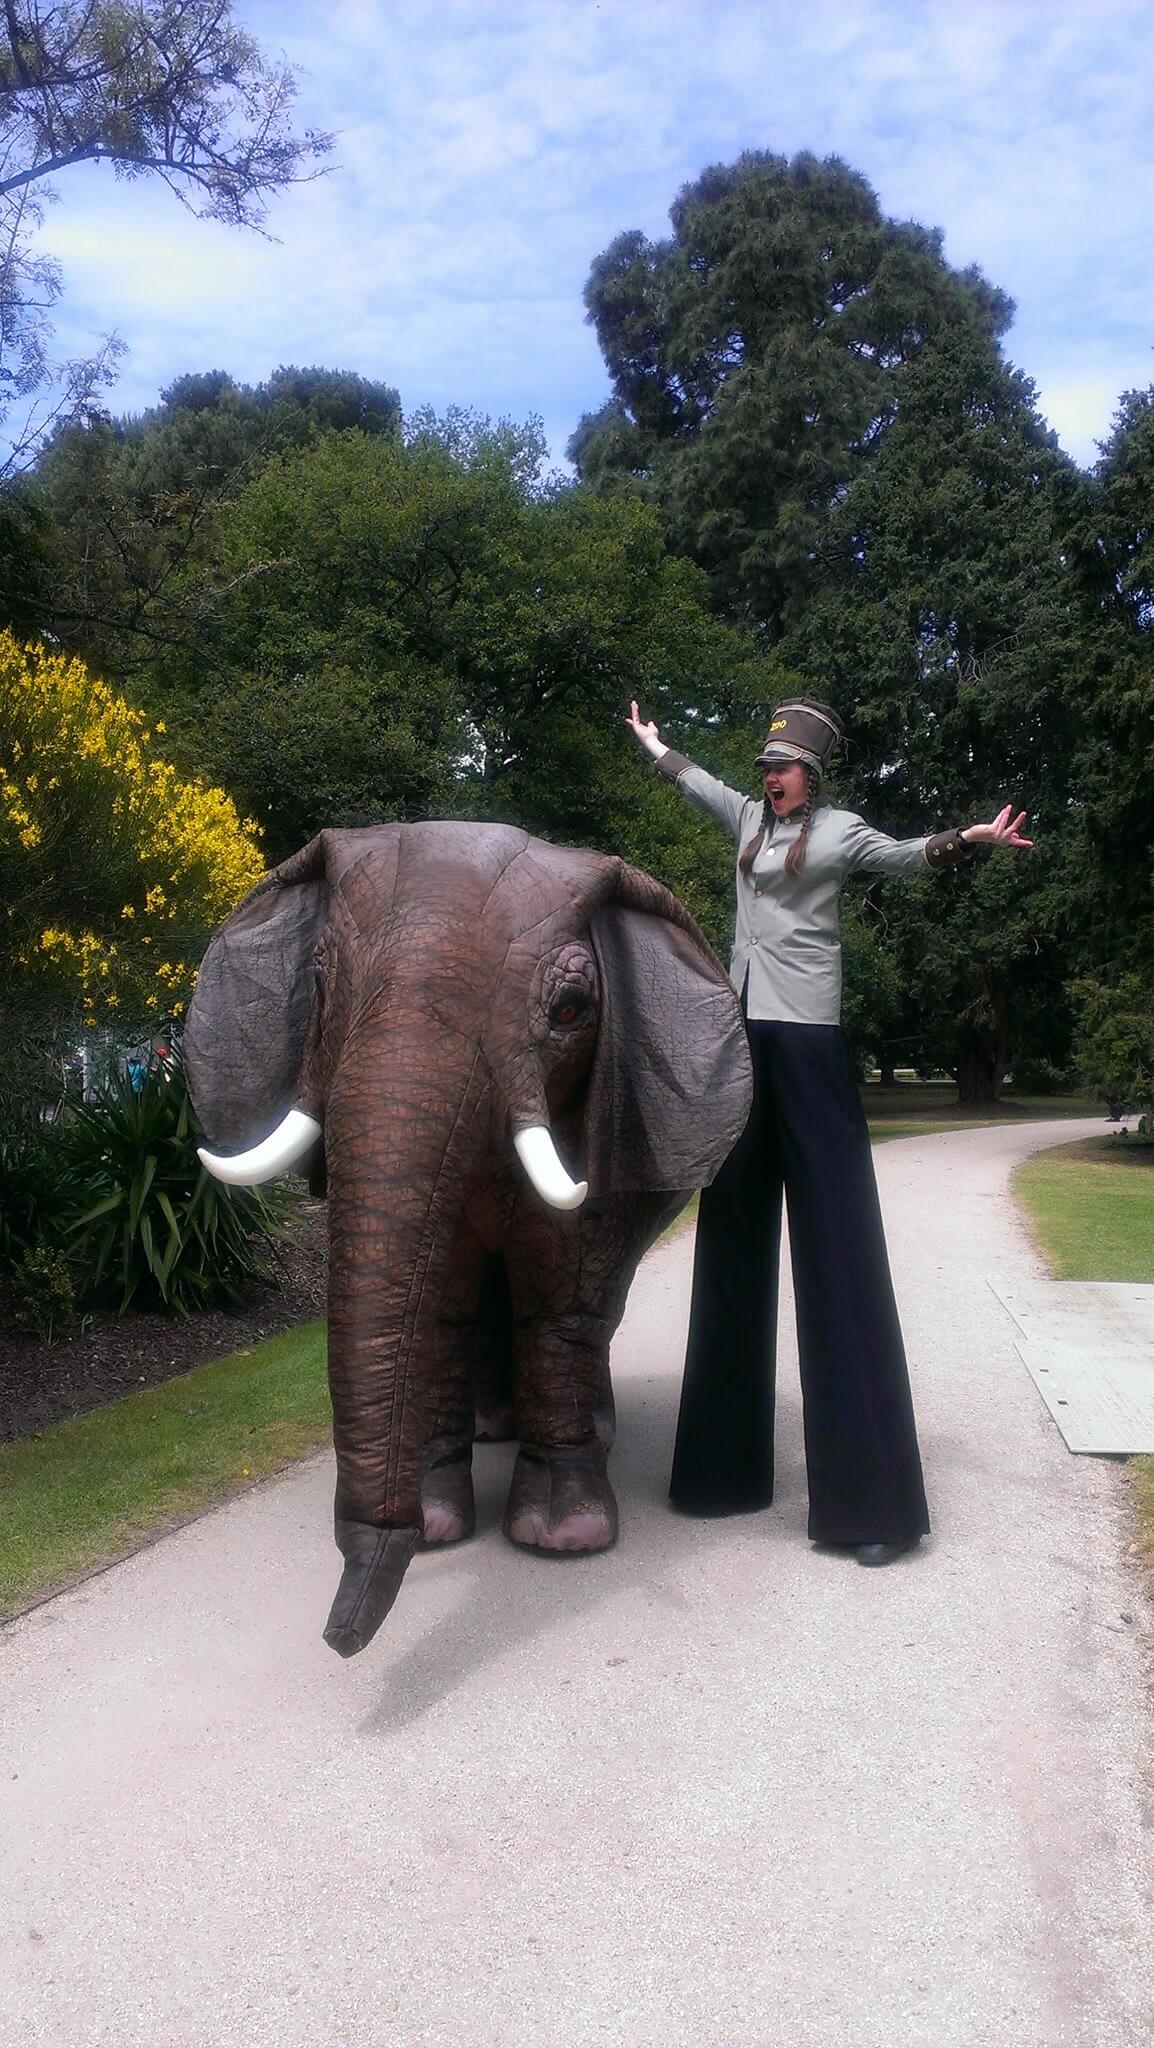 Eesha The Elephant